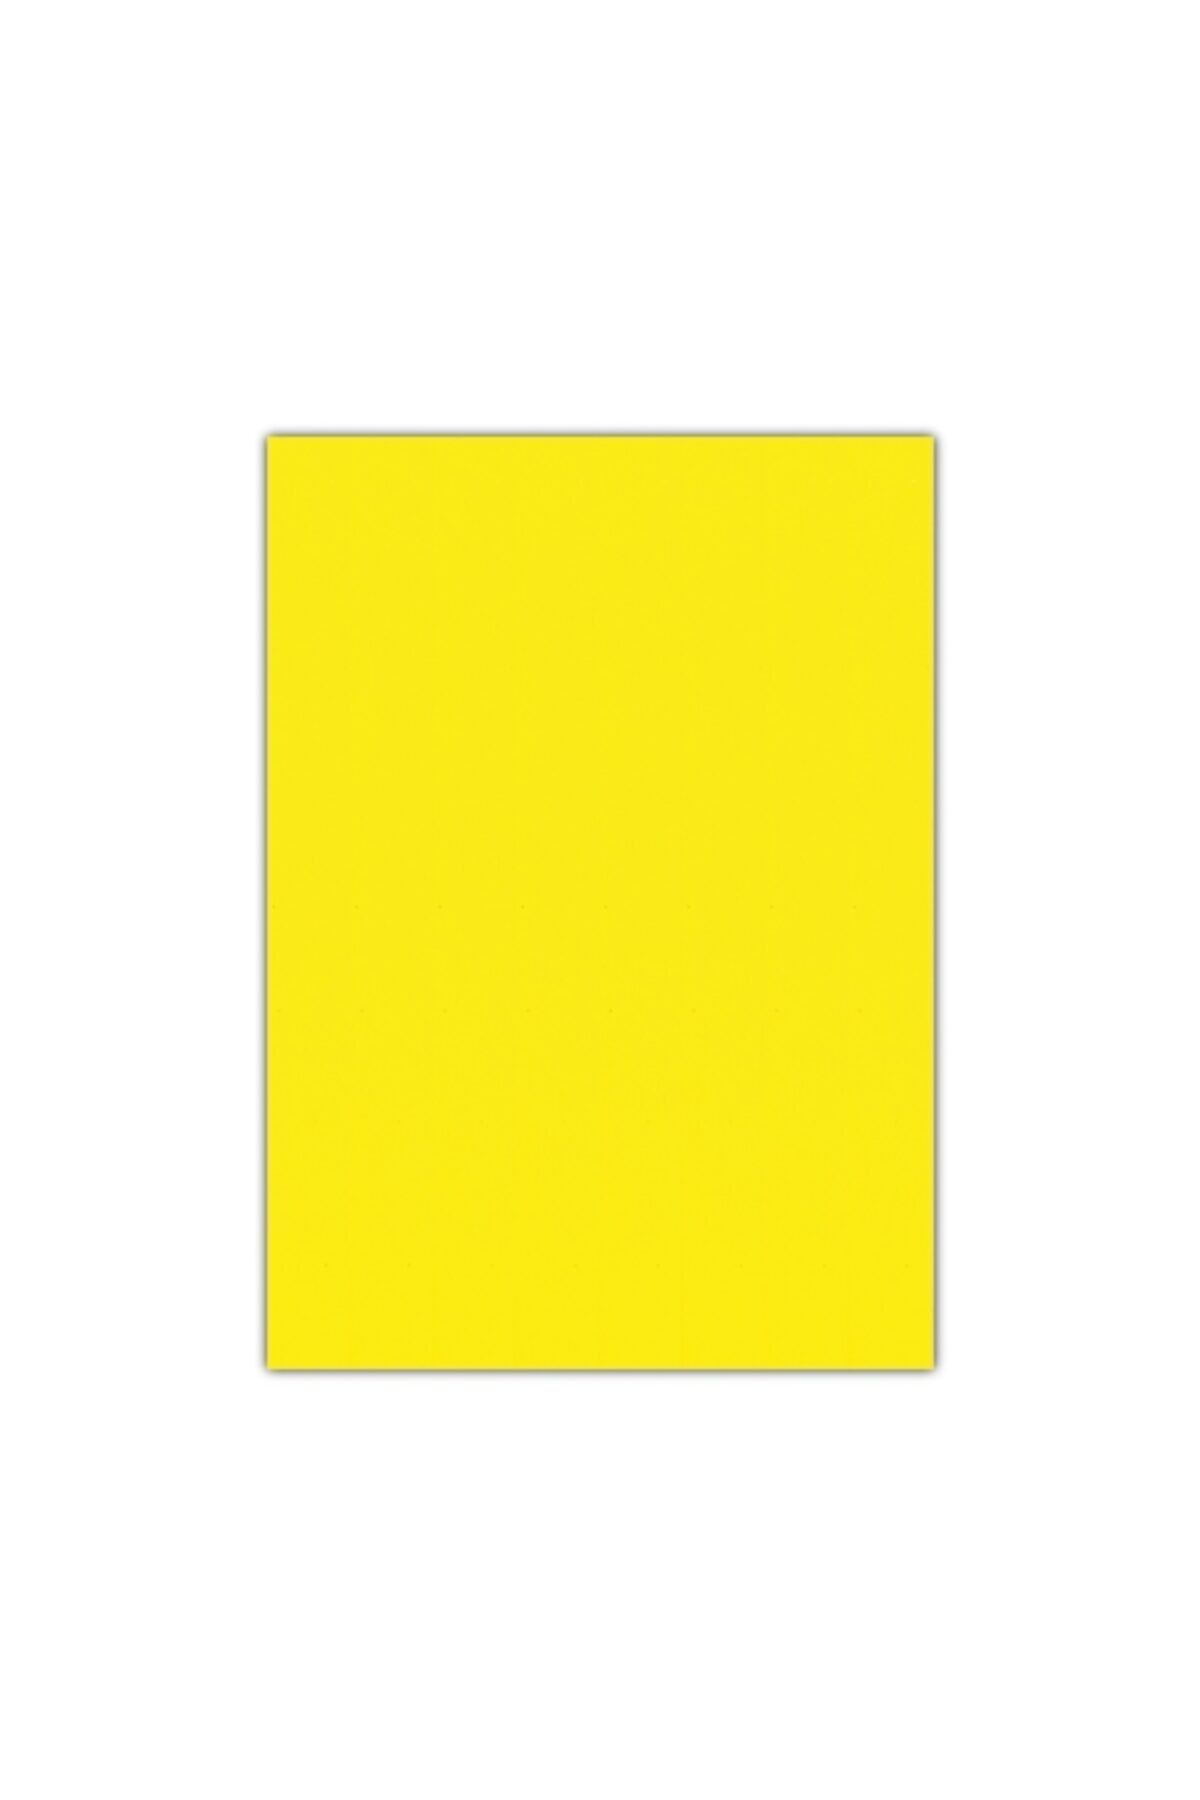 EVA Sünger Sarı Renk 100x150cm Kalınlık 1.5 Mm